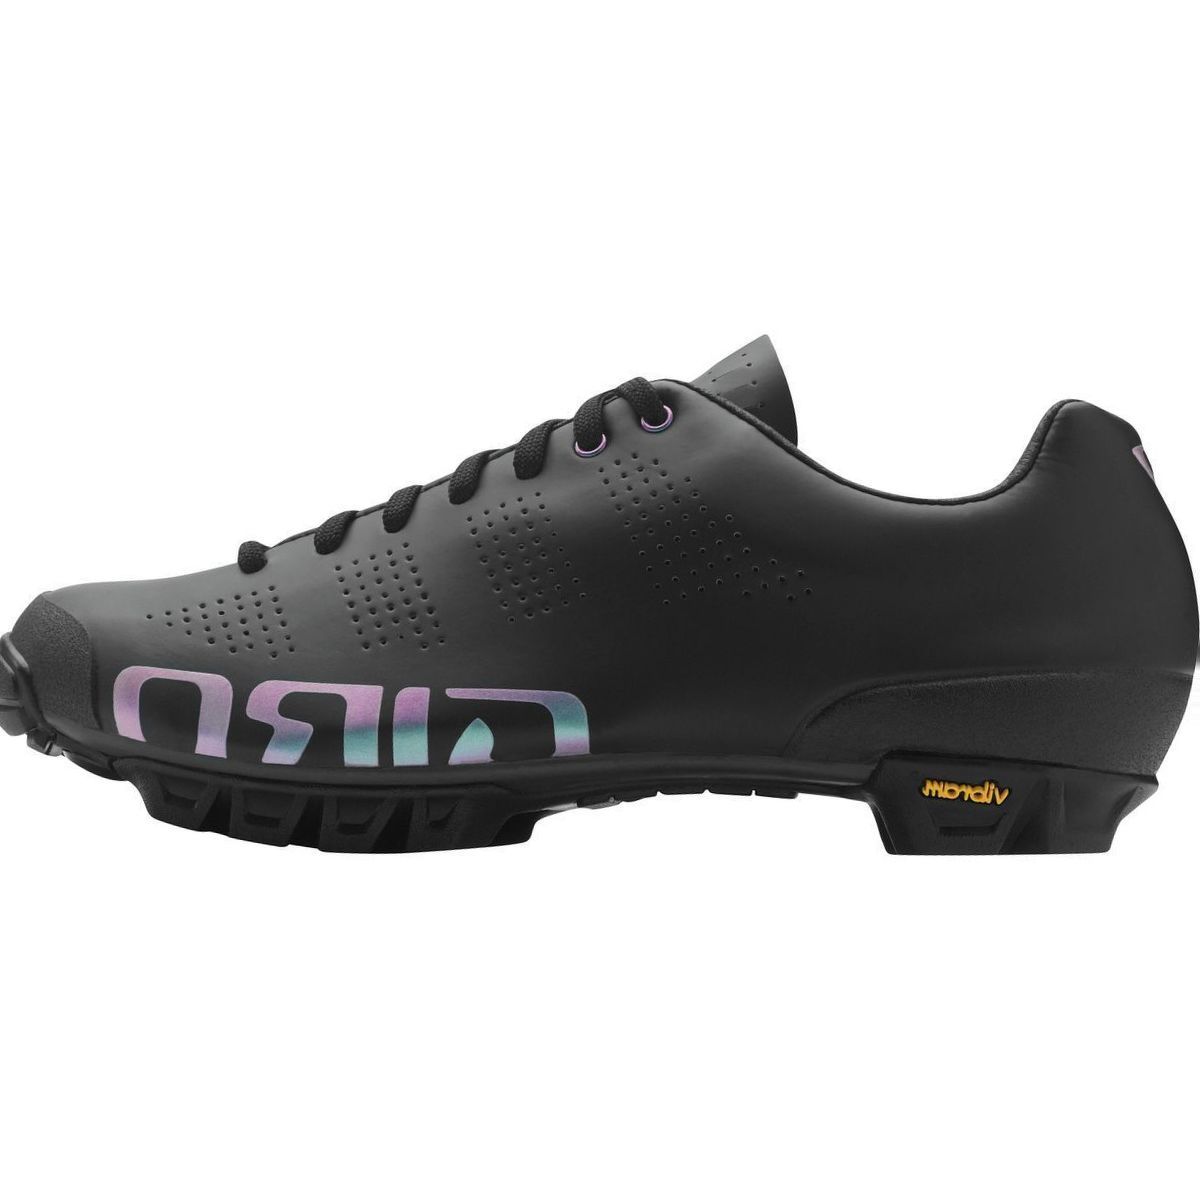 Giro Empire W VR90 Cycling Shoe - Women's